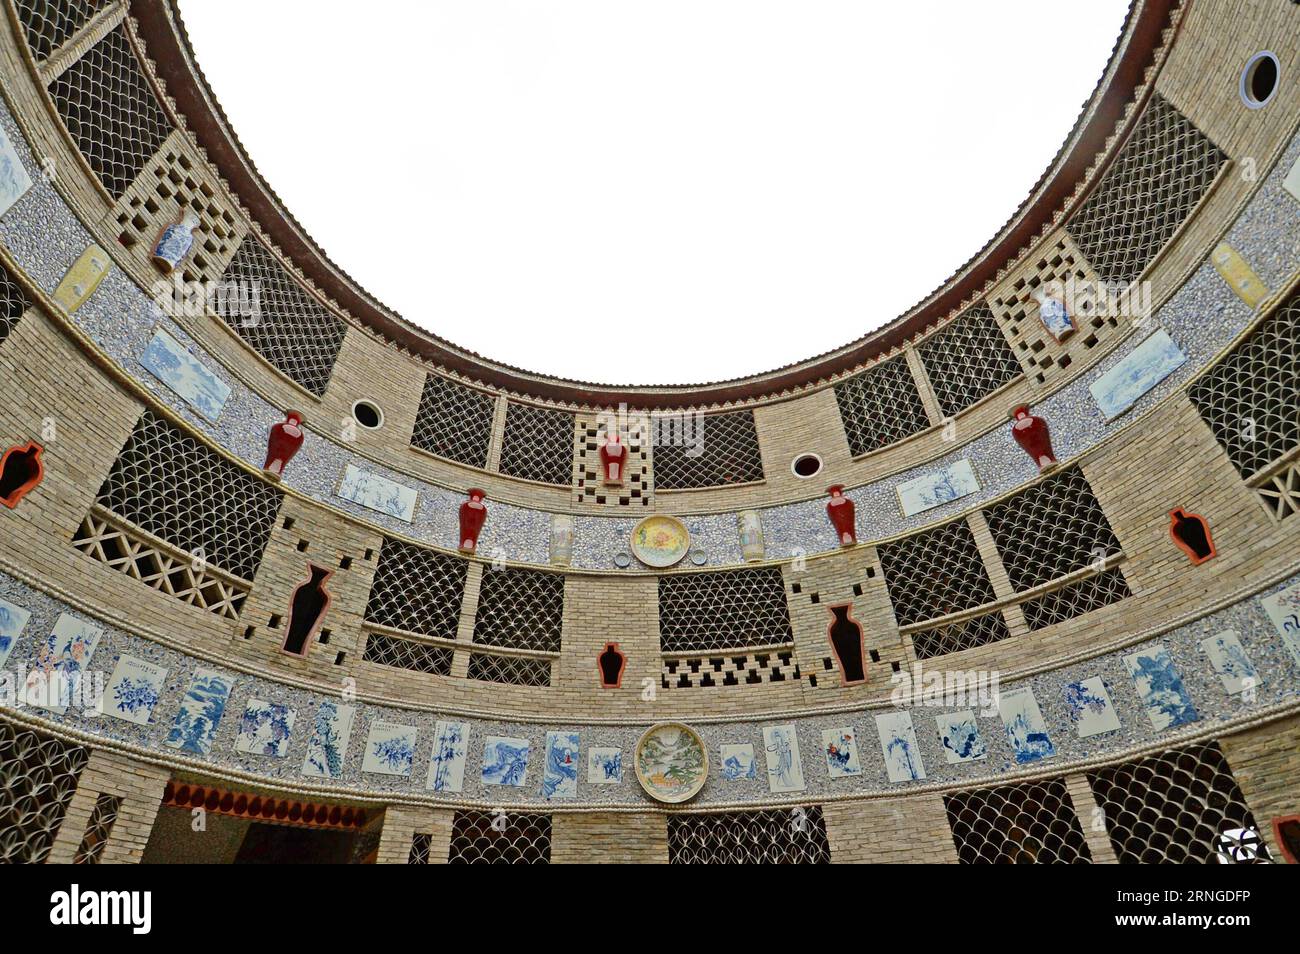 (160922) -- NANCHANG, 21 septembre 2016 -- une photo prise le 21 septembre 2016 montre le palais procelain dans le village de Xinping du comté de Fuliang à Jingdezhen, province du Jiangxi dans l'est de la Chine. Le villageois de 86 ans Yu Ermei a passé cinq ans à construire ce palais de porcelaine. Le bâtiment circulaire de trois étages est décoré de plus de 60 000 pièces de porcelaine. (zkr) CHINA-JIANGXI-JINGDEZHEN-PORCELAINE PALACE(CN) WanxXiang PUBLICATIONxNOTxINxCHN Nanchang sept 21 2016 photo prise LE 21 2016 septembre montre le palais procesain dans le village de Xinping du comté de Fuliang dans la province de Jiangxi de Jingdezhen Chine orientale Banque D'Images